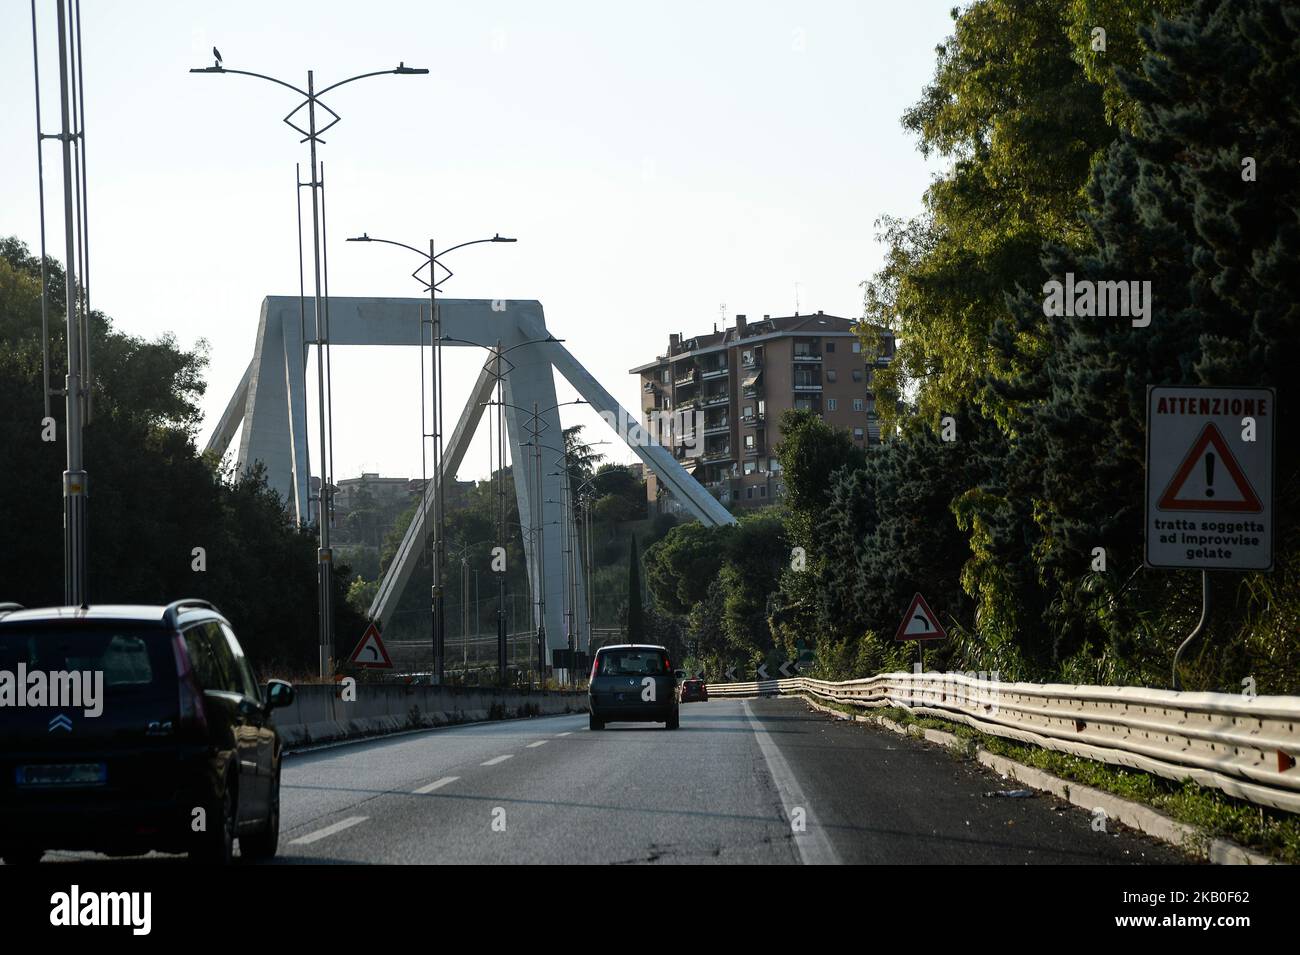 Après l'effondrement du pont de Morandi à Gênes, les alarmes sur les infrastructures en Italie se multiplient. En plus d'avoir construit le pont de Gênes qui s'est effondré, l'ingénieur romain Riccardo Morandi (décédé en 1989 à l'âge de 87 ans) a également conçu un pont dans la capitale. C'est un viaduc suspendu curviligne qui longe le Tibre dans le quartier de Magliana, couvert tous les jours par tous ceux qui viennent ou voyagent à Fiumicino. Bien que considérablement plus petit dans la taille, le pont Morandi à Rome rappelle celui de Gênes en ce qui concerne à la fois les matériaux et les solutions structurelles adoptées, Rome, I Banque D'Images